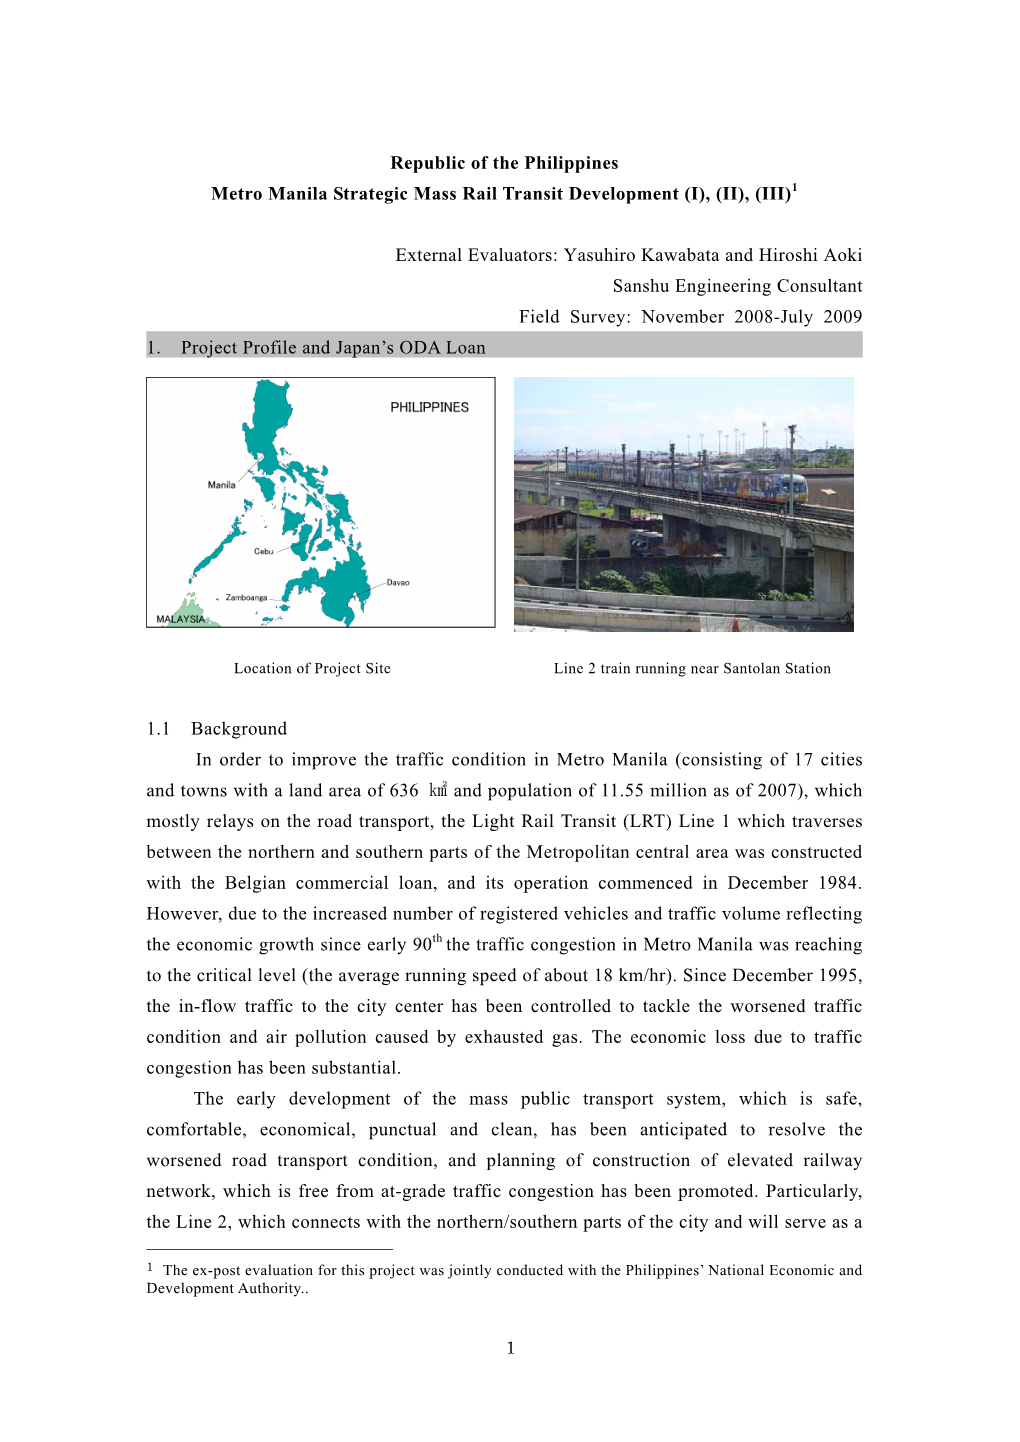 Metro Manila Strategic Mass Rail Transit Development (I), (II), (III)1